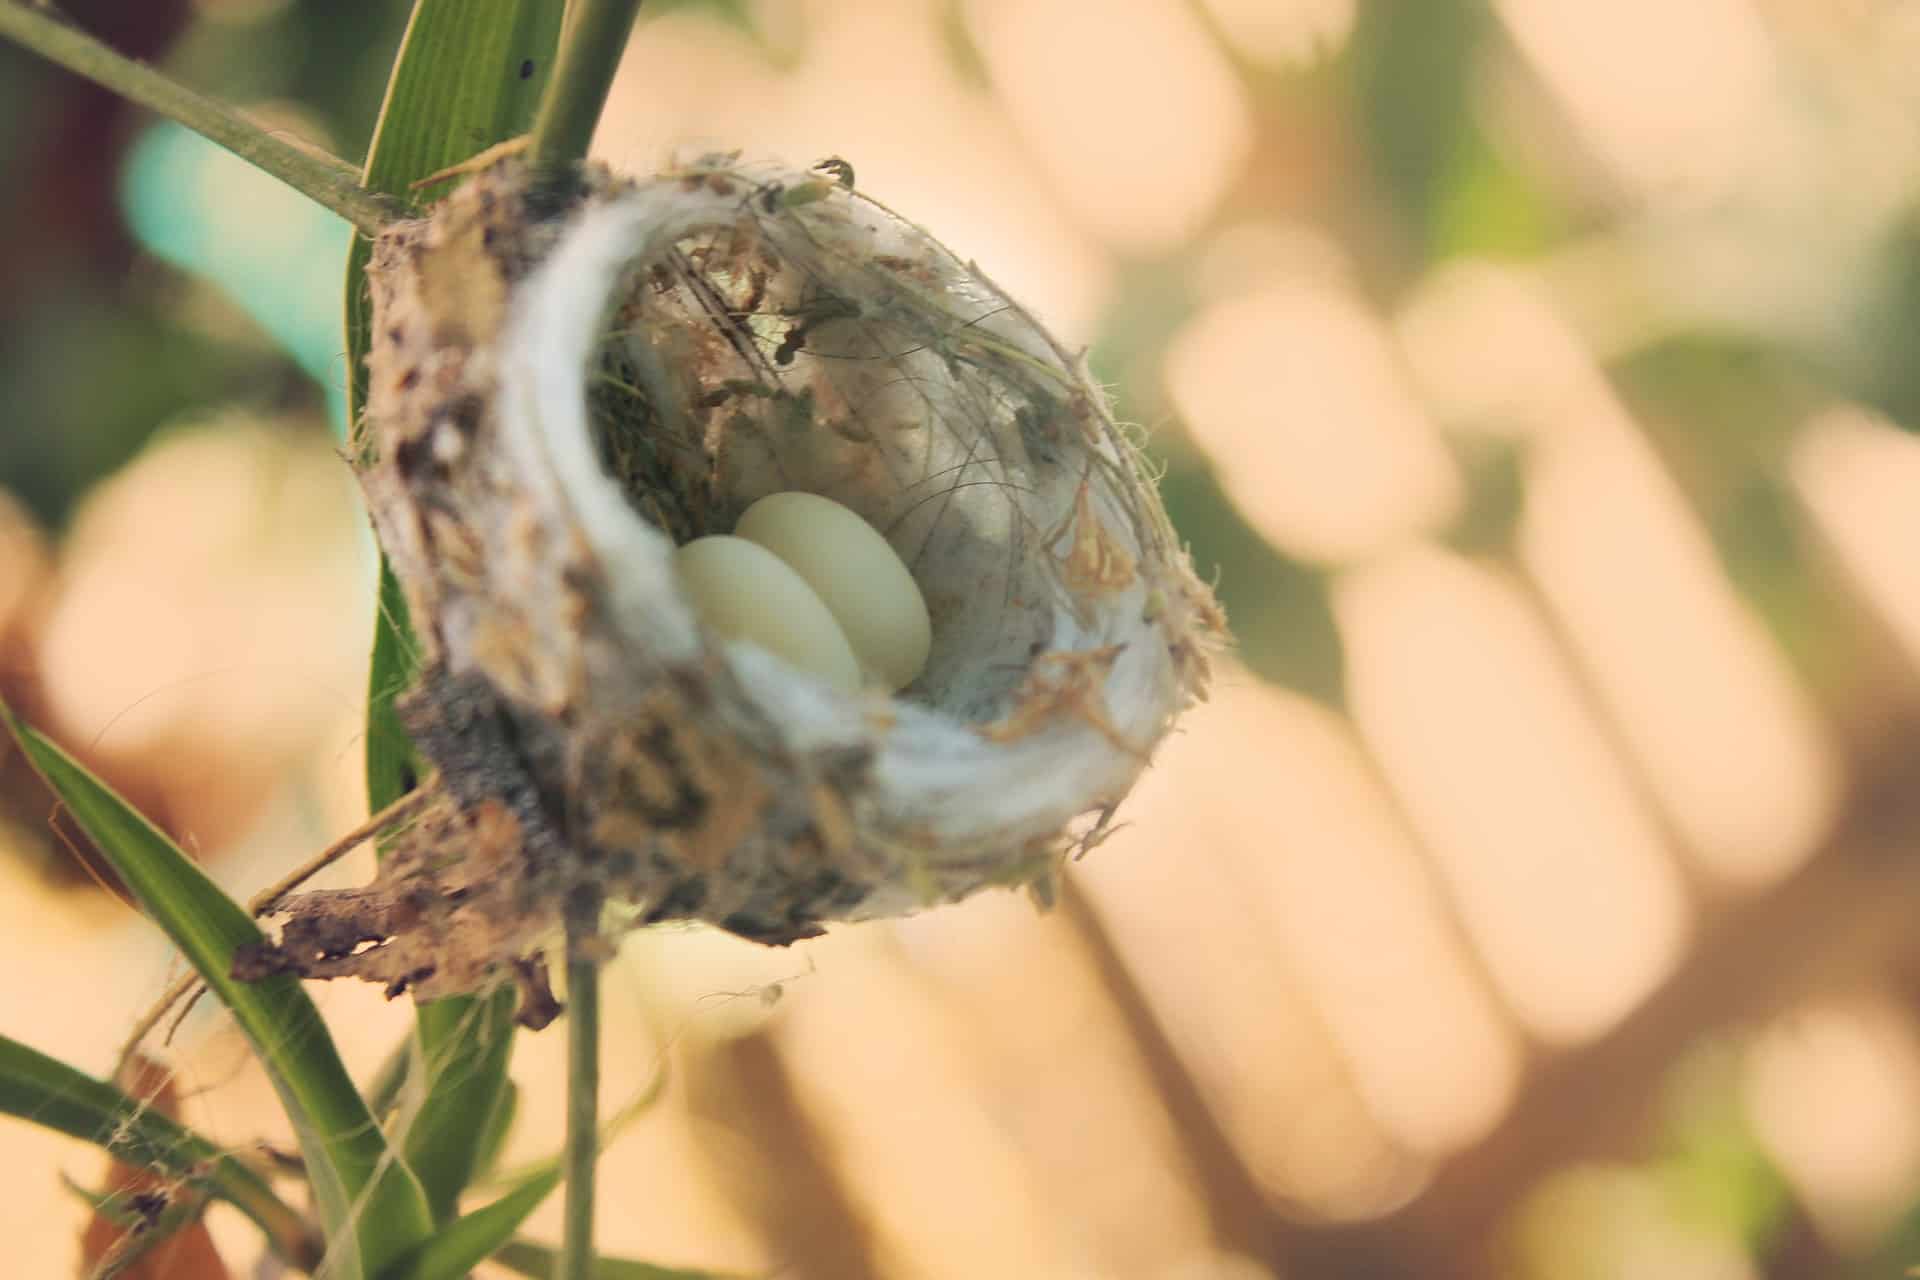 How Many Eggs Do Hummingbirds Lay? How Many And How Often